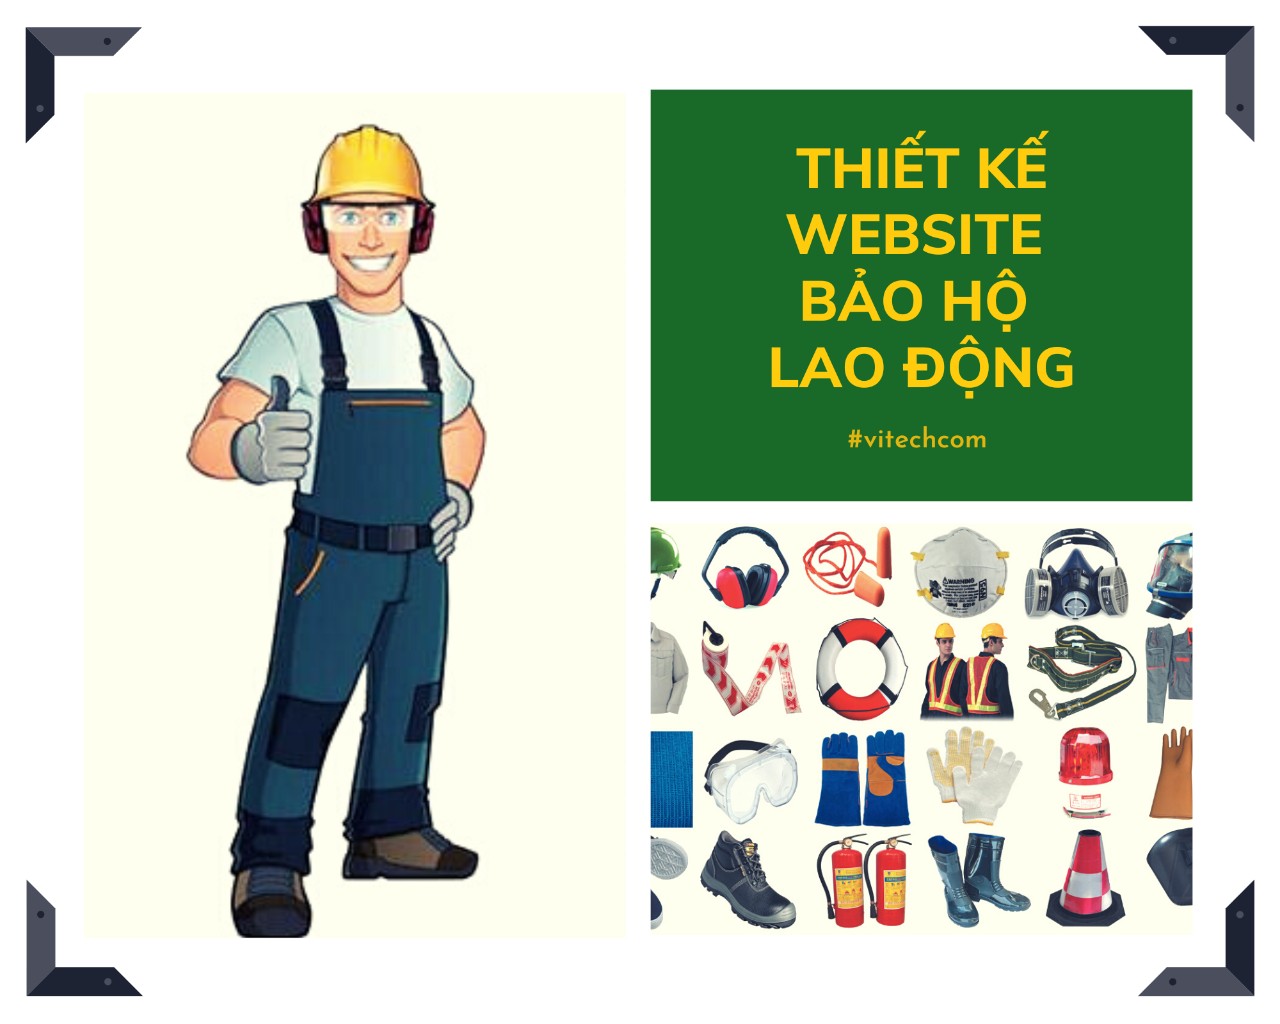 Thiết kế website bảo hộ lao động